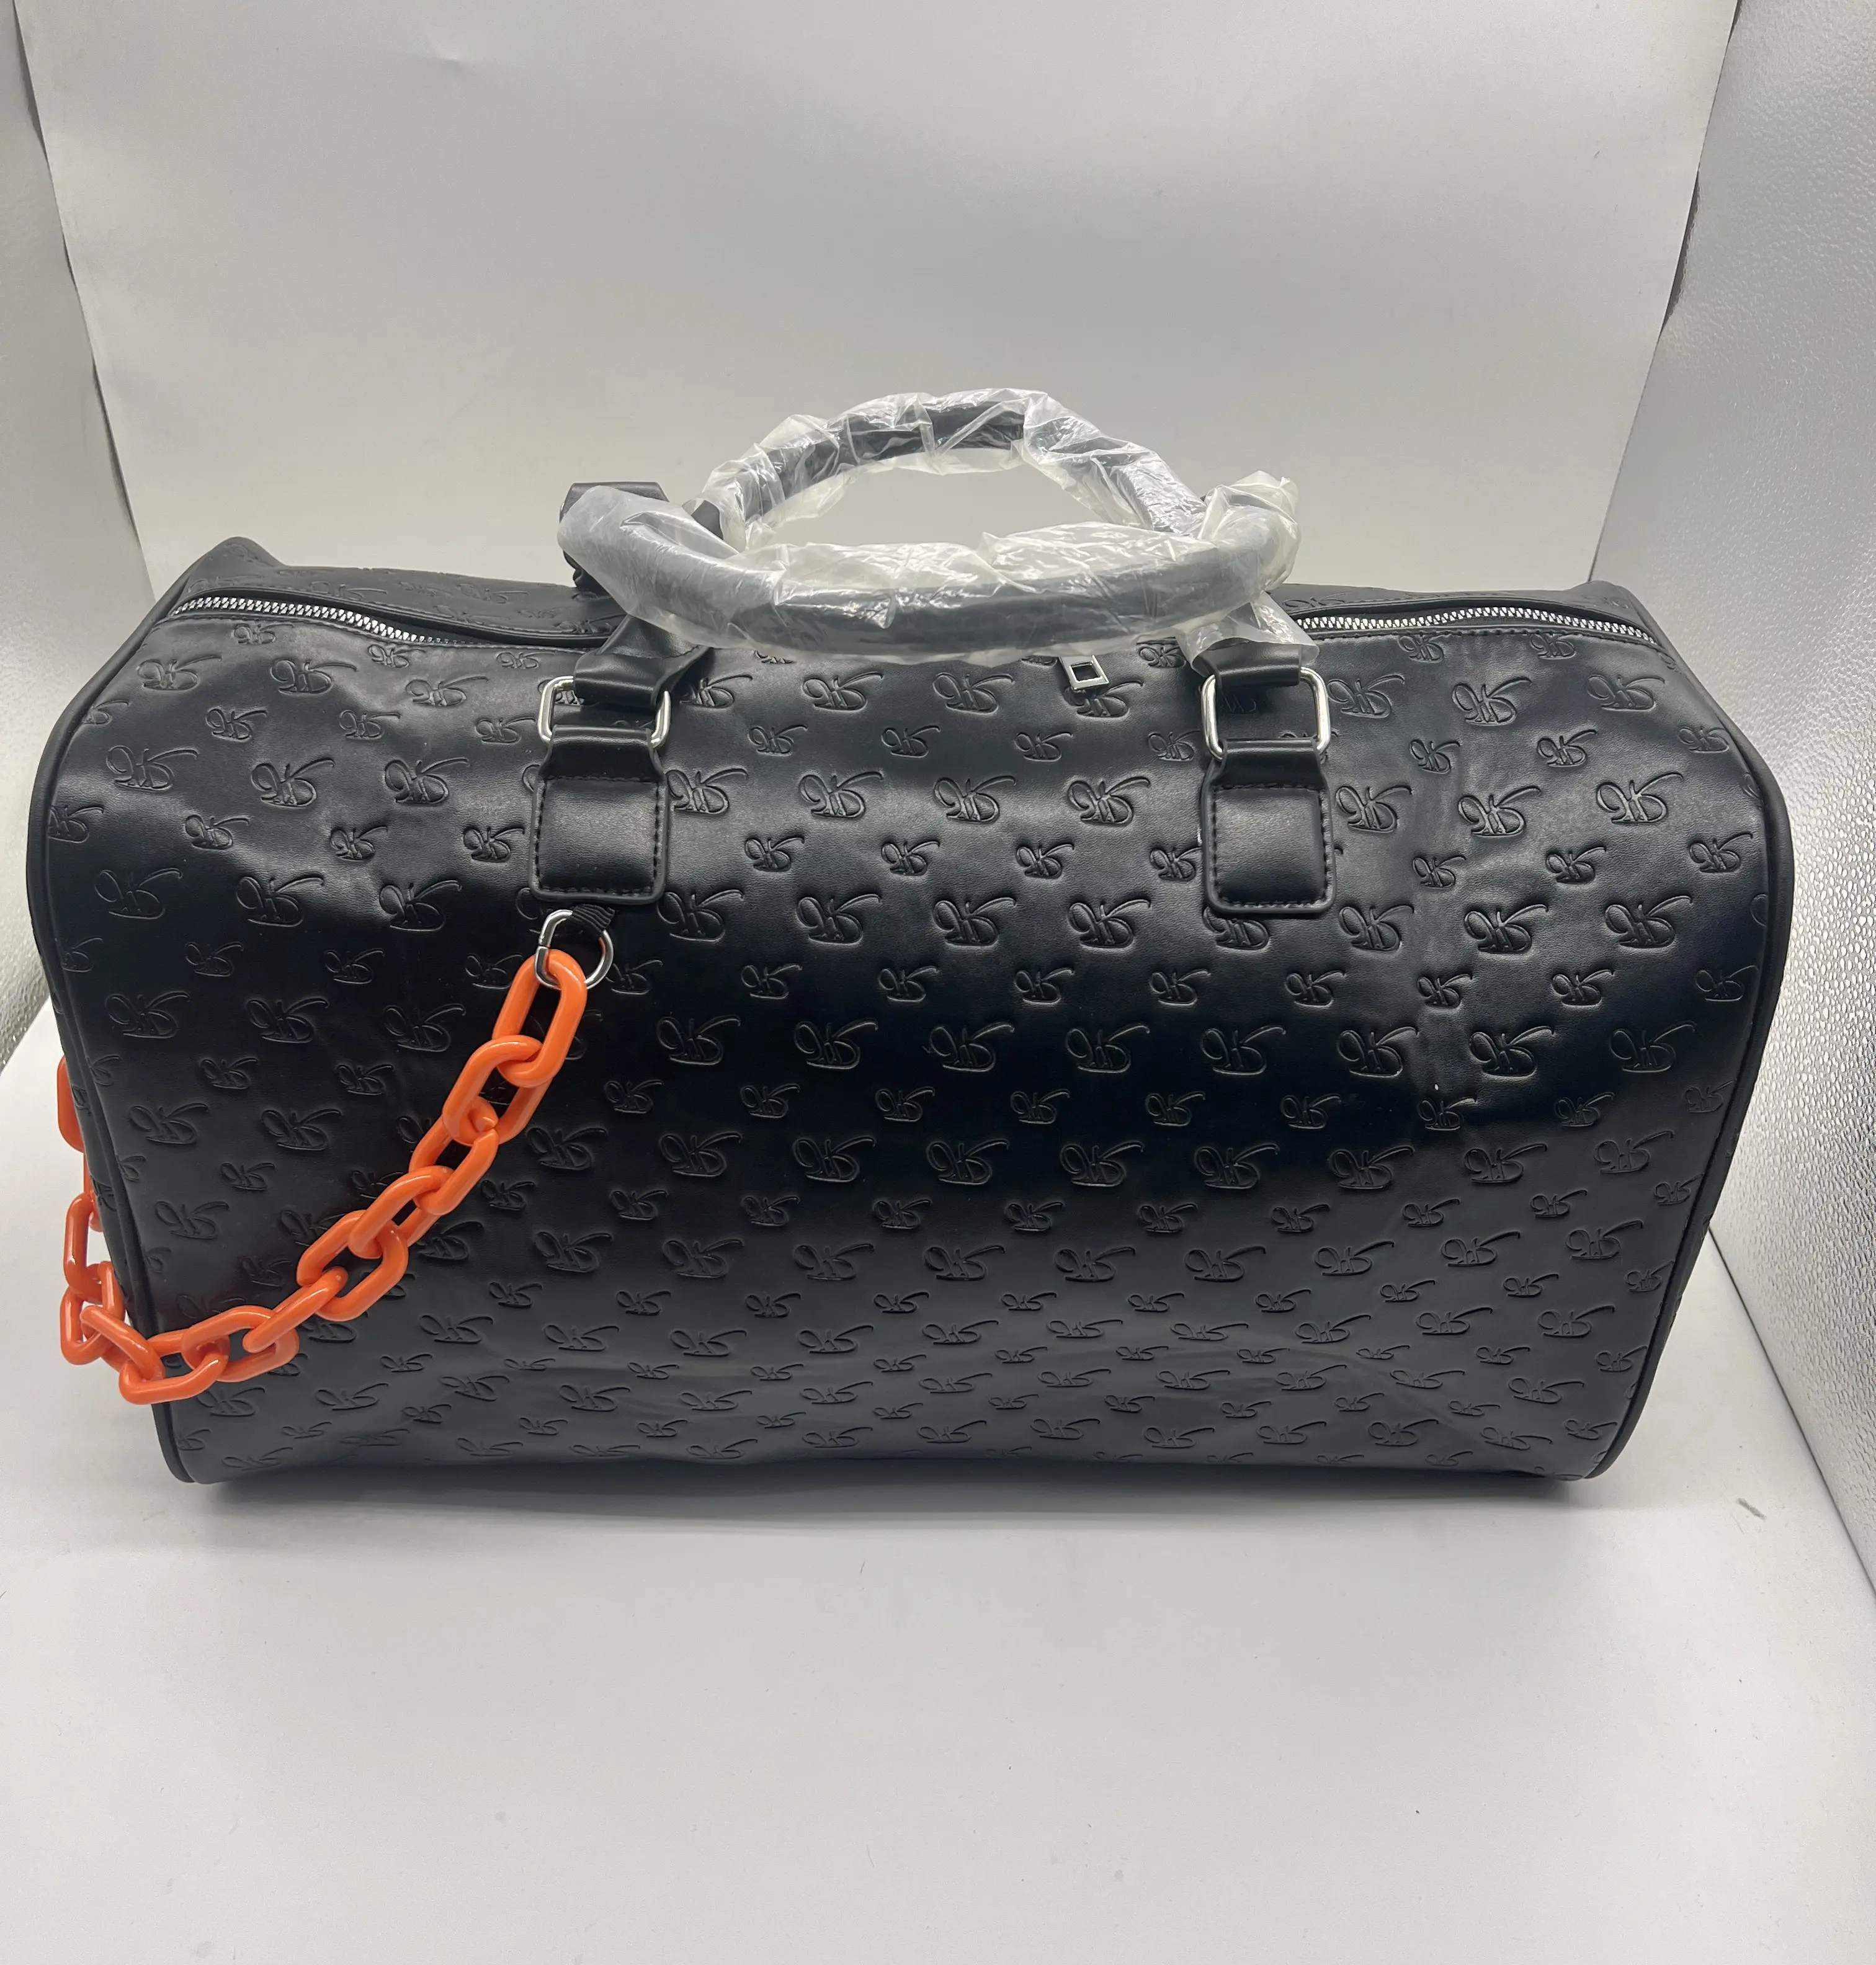 China Manufacturer Custom Large men travel bag Indentation Design leather duffle bag with chain weekender bag